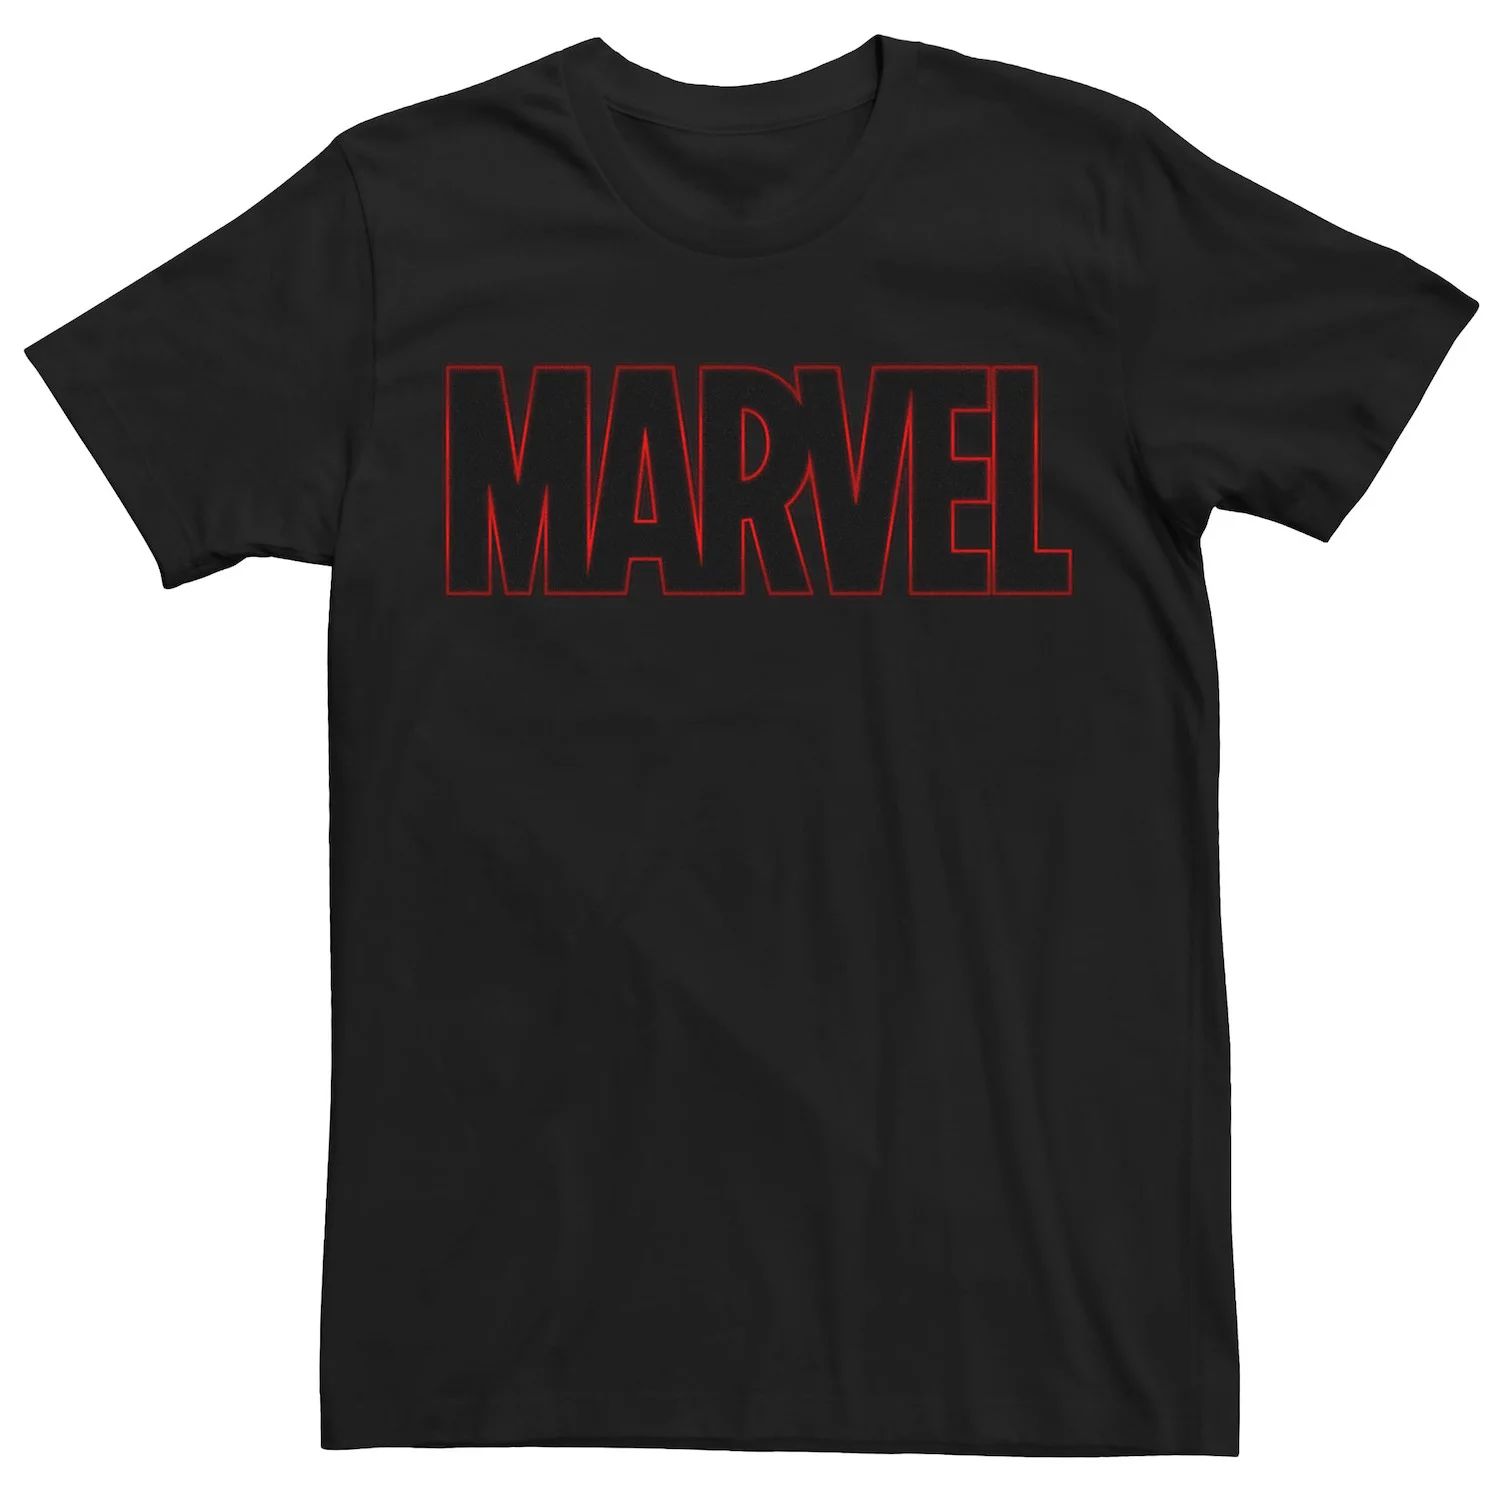 мужская классическая футболка с графическим логотипом marvel Мужская классическая футболка с графическим логотипом Marvel